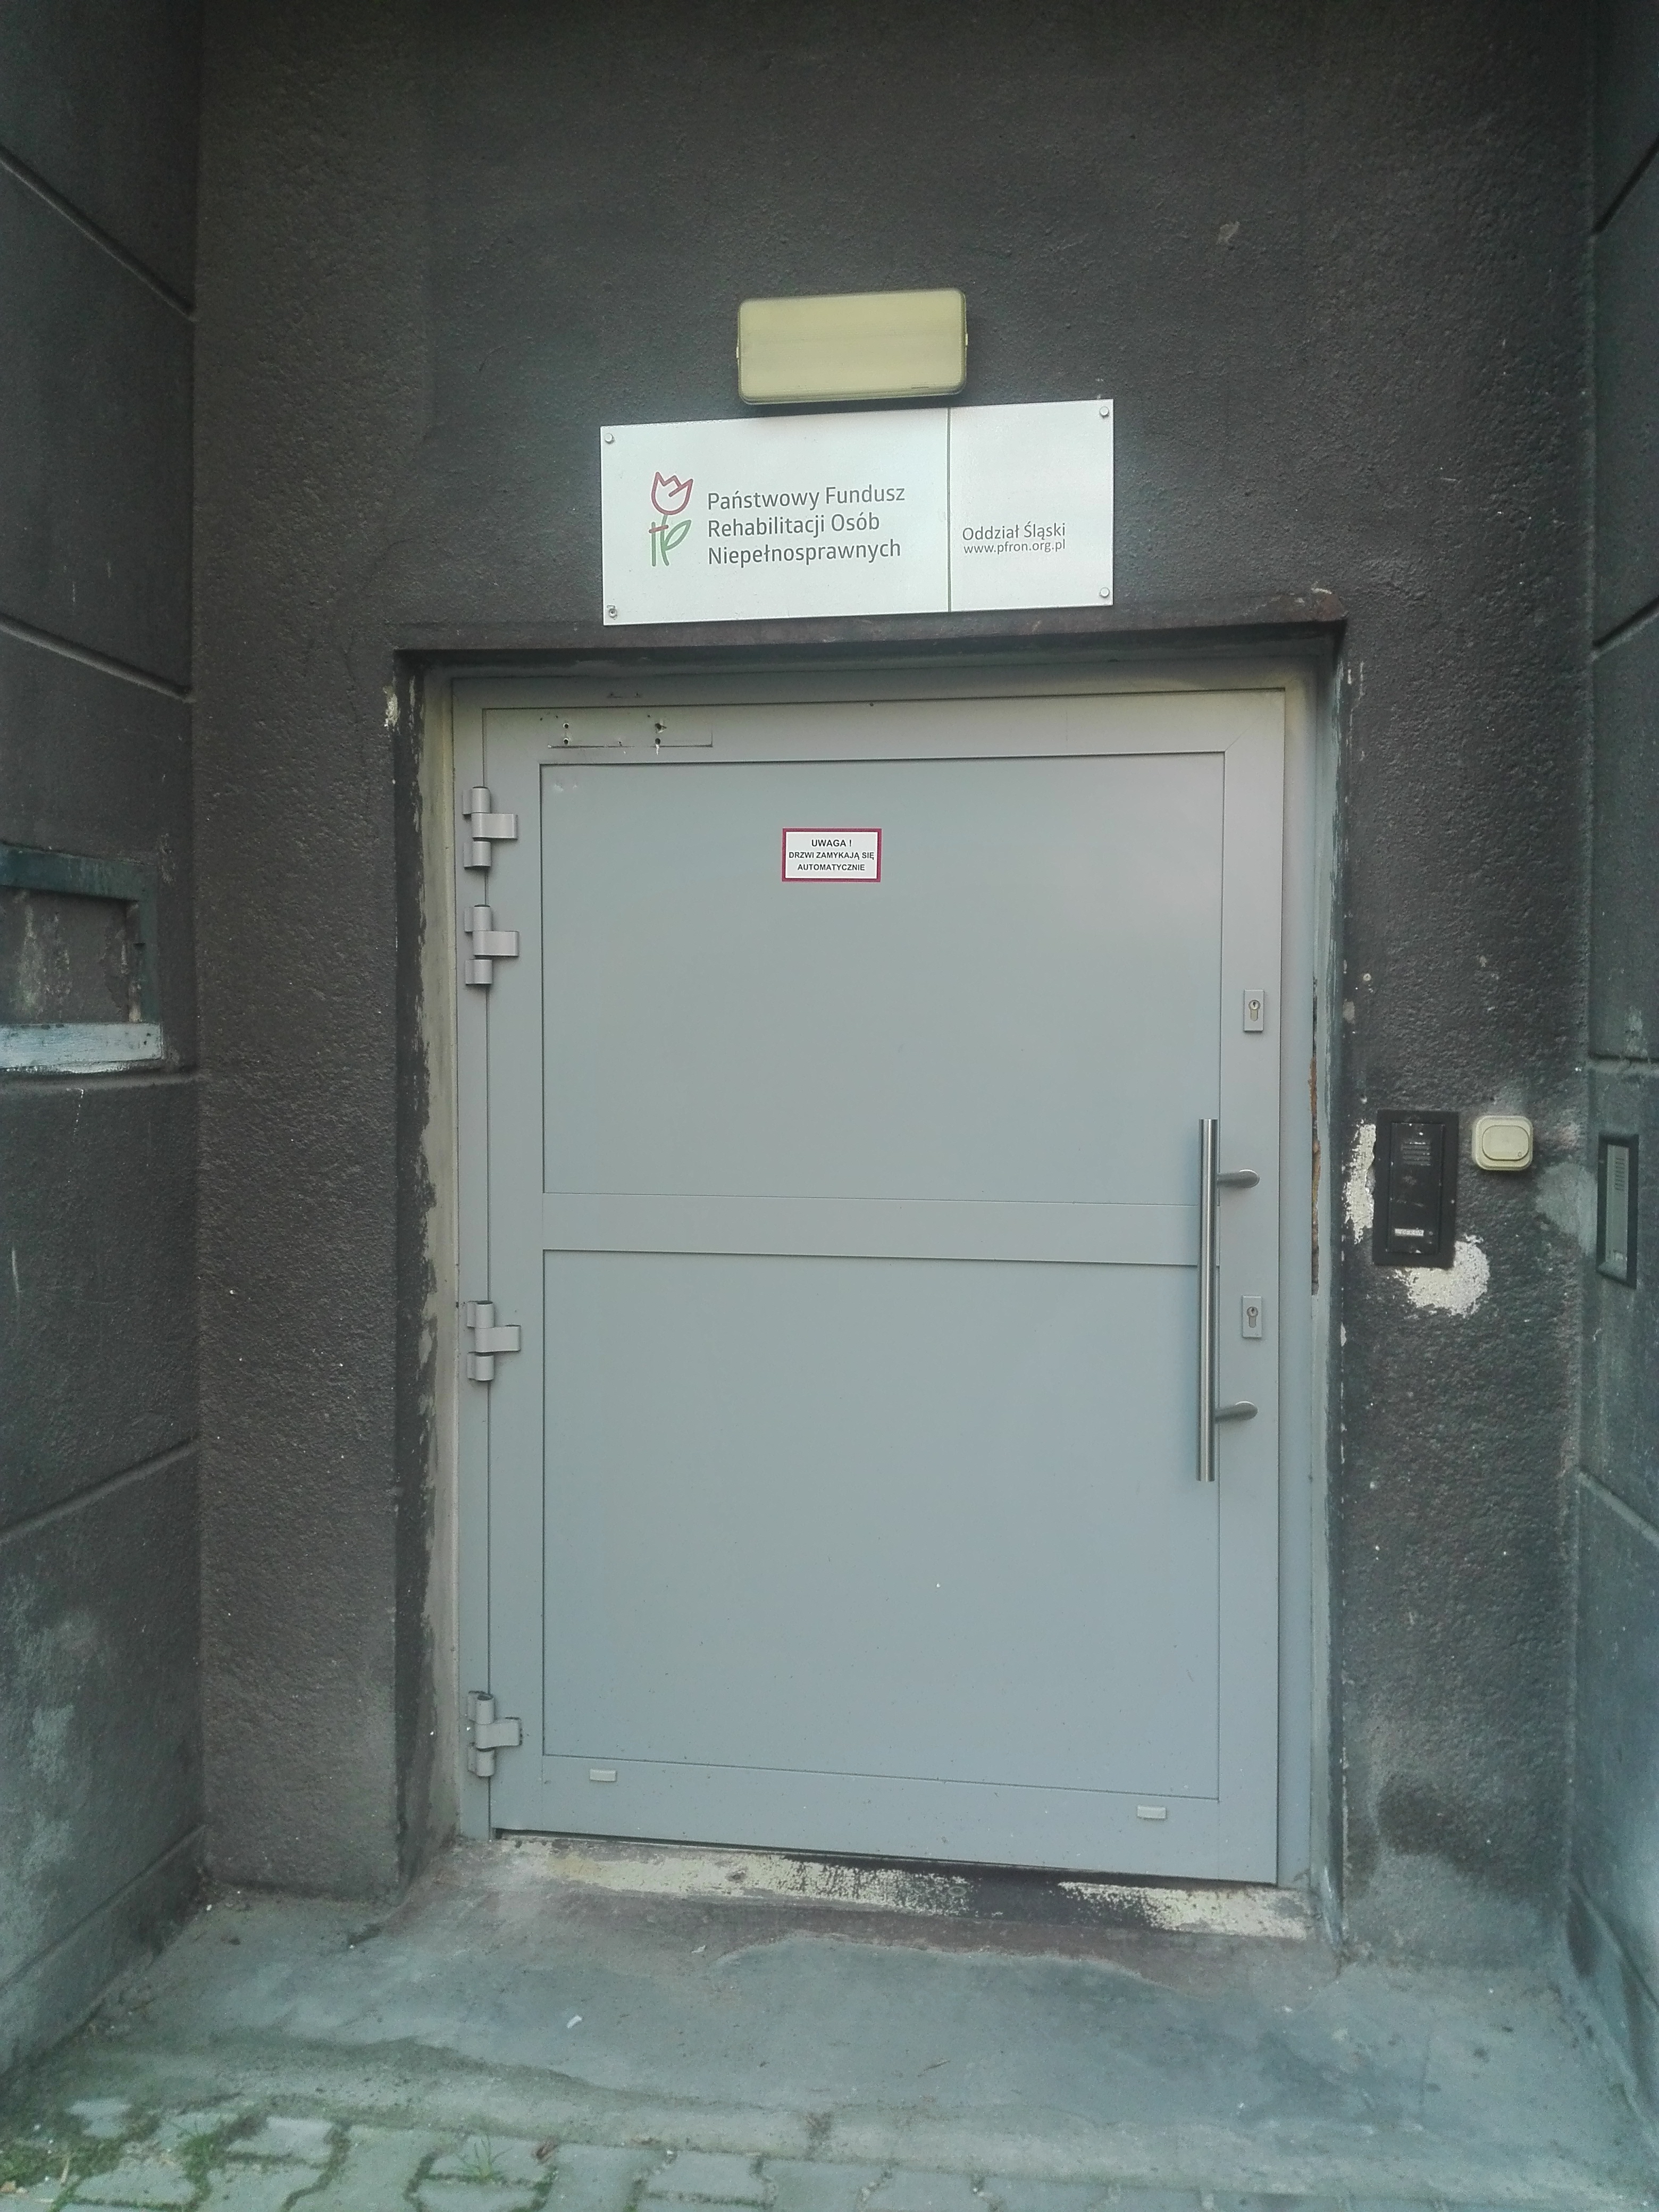 Szerokie jasnoszare drzwi. Nad drzwiami tablica z logo i napisem „Państwowy Fundusz Rehabilitacji Osób Niepełnosprawnych”. Po prawej stronie od drzwi dzwonek oraz domofon. Na drzwiach tabliczka z napisem „uwaga, drzwi zamykają się automatycznie”